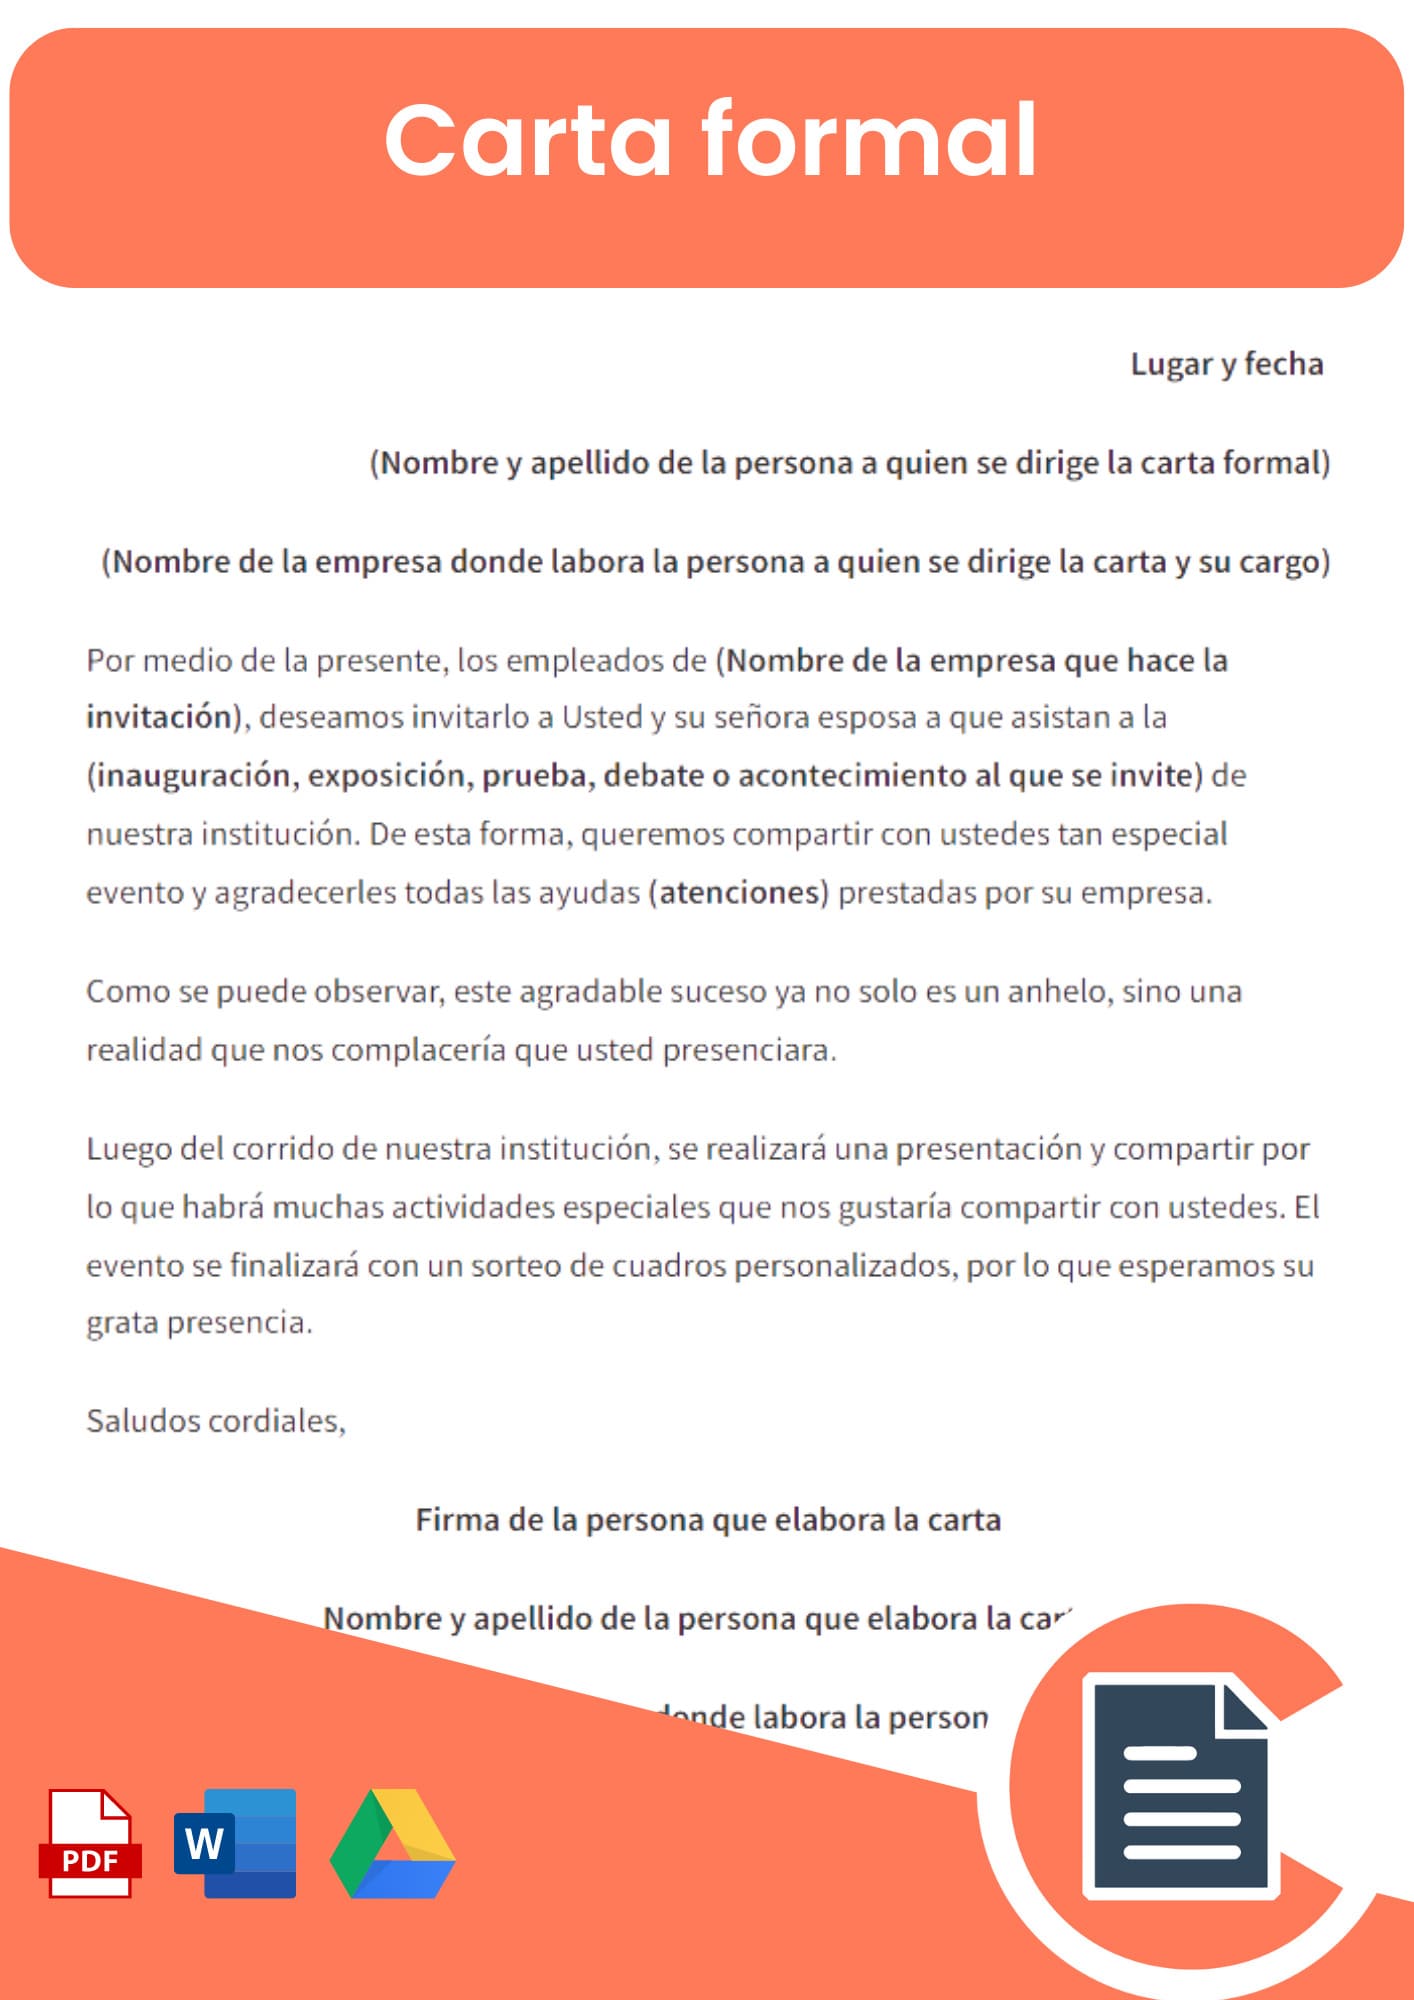 Carta Formal, Guías y Ejemplos » Rellena Online, Word, Pdf